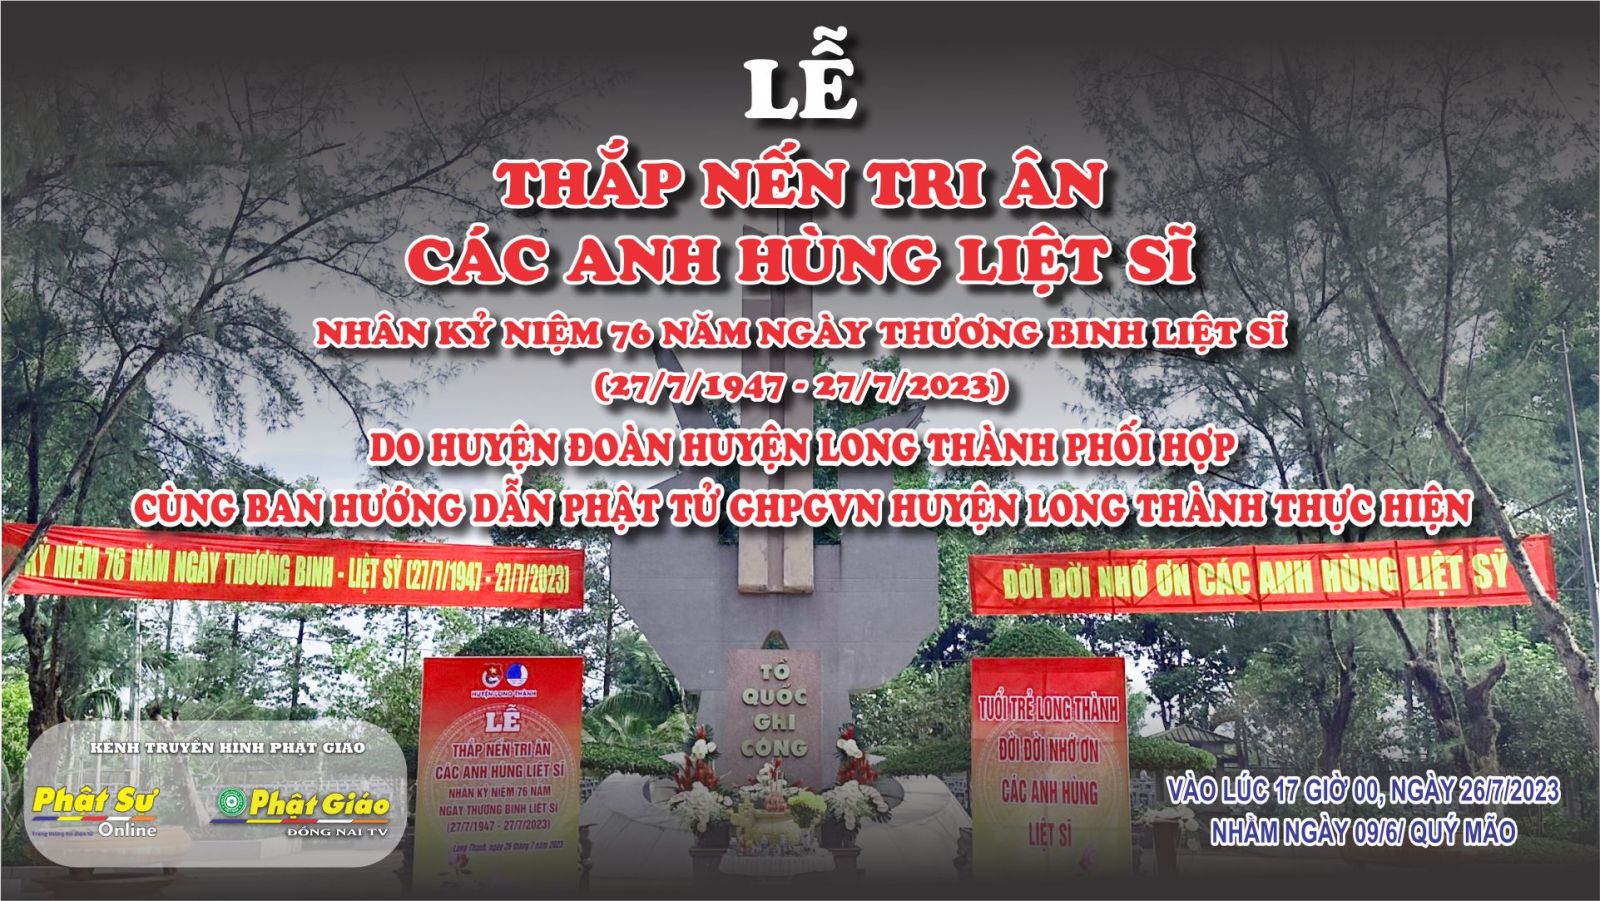 Trực tiếp: Lễ Thắp Nến Tri Ân các Anh Hùng Liệt Sĩ do Ban Hướng Dẫn Phật tử GHPGVN huyện Long Thành kết hợp cùng Huyện Đoàn huyện Long Thành tổ chức.